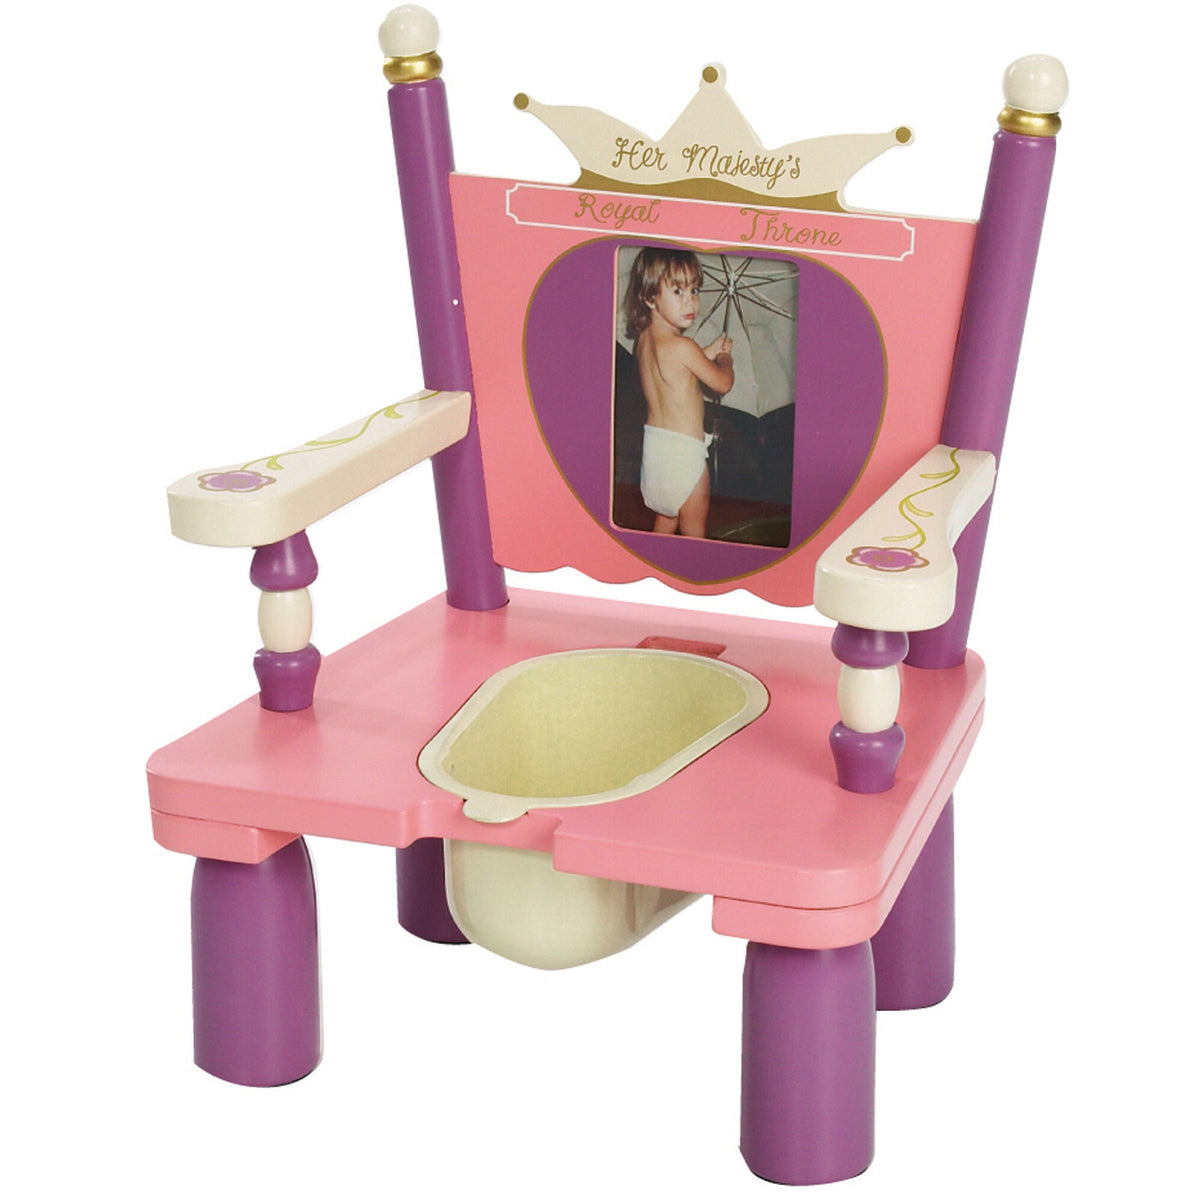 Her Majestys Throne Princess Potty Chair My Kidz Space